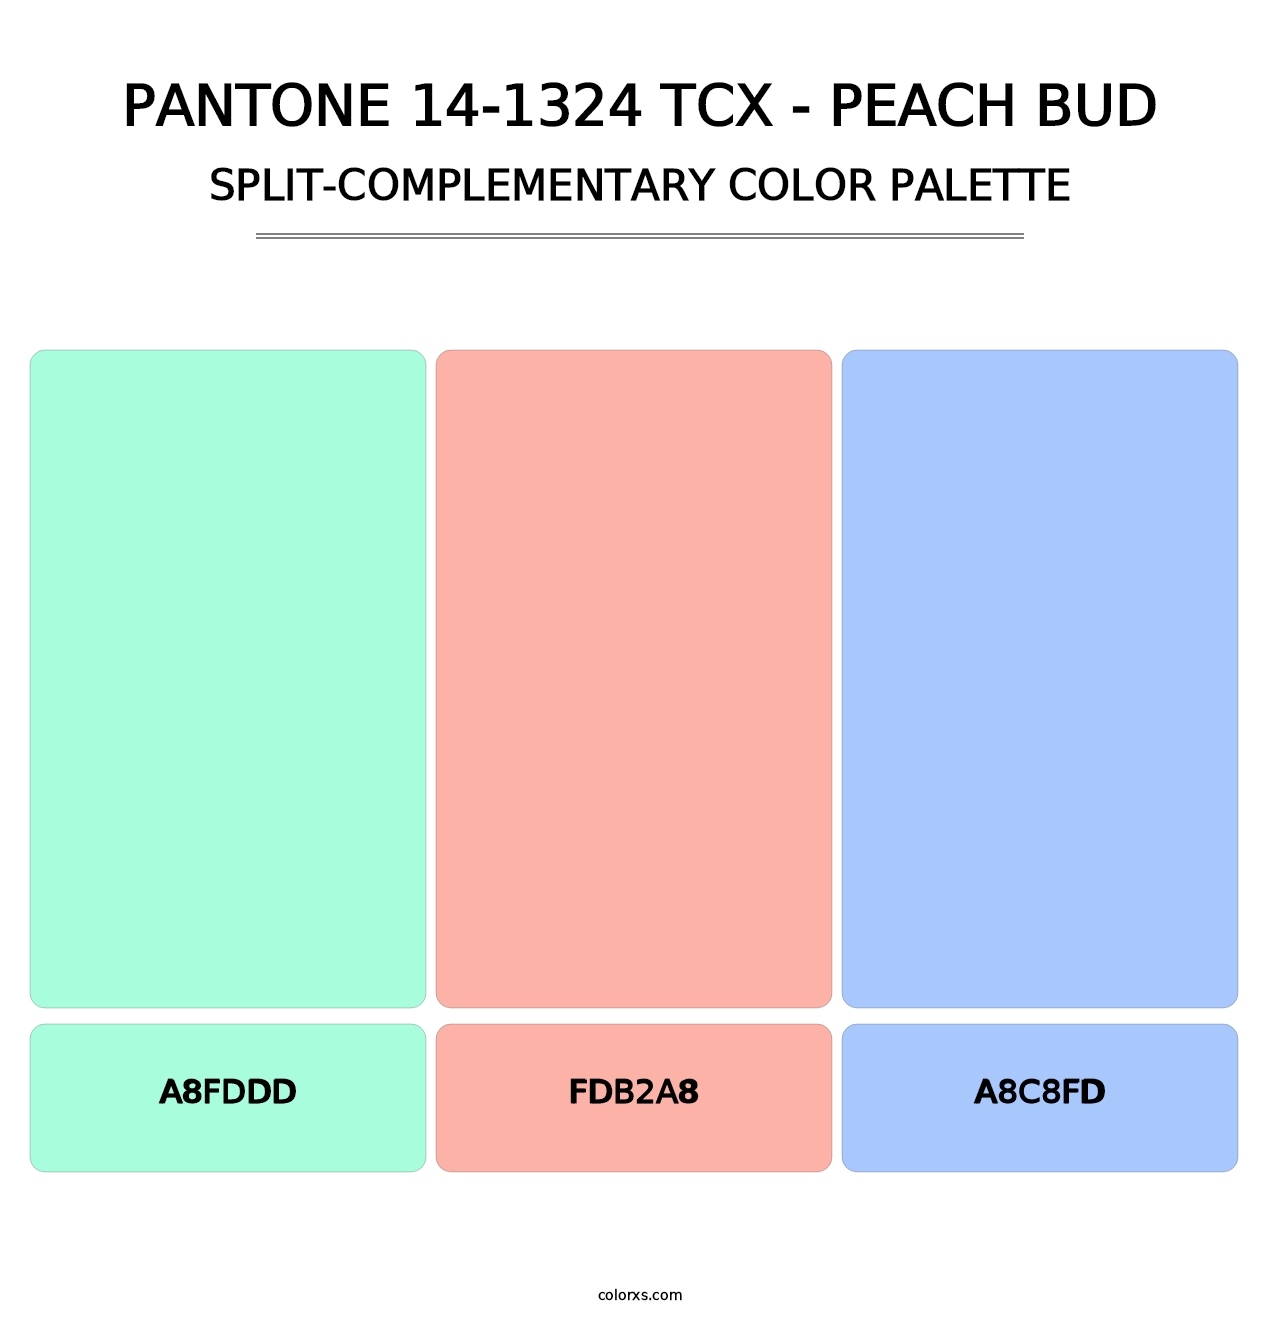 PANTONE 14-1324 TCX - Peach Bud - Split-Complementary Color Palette